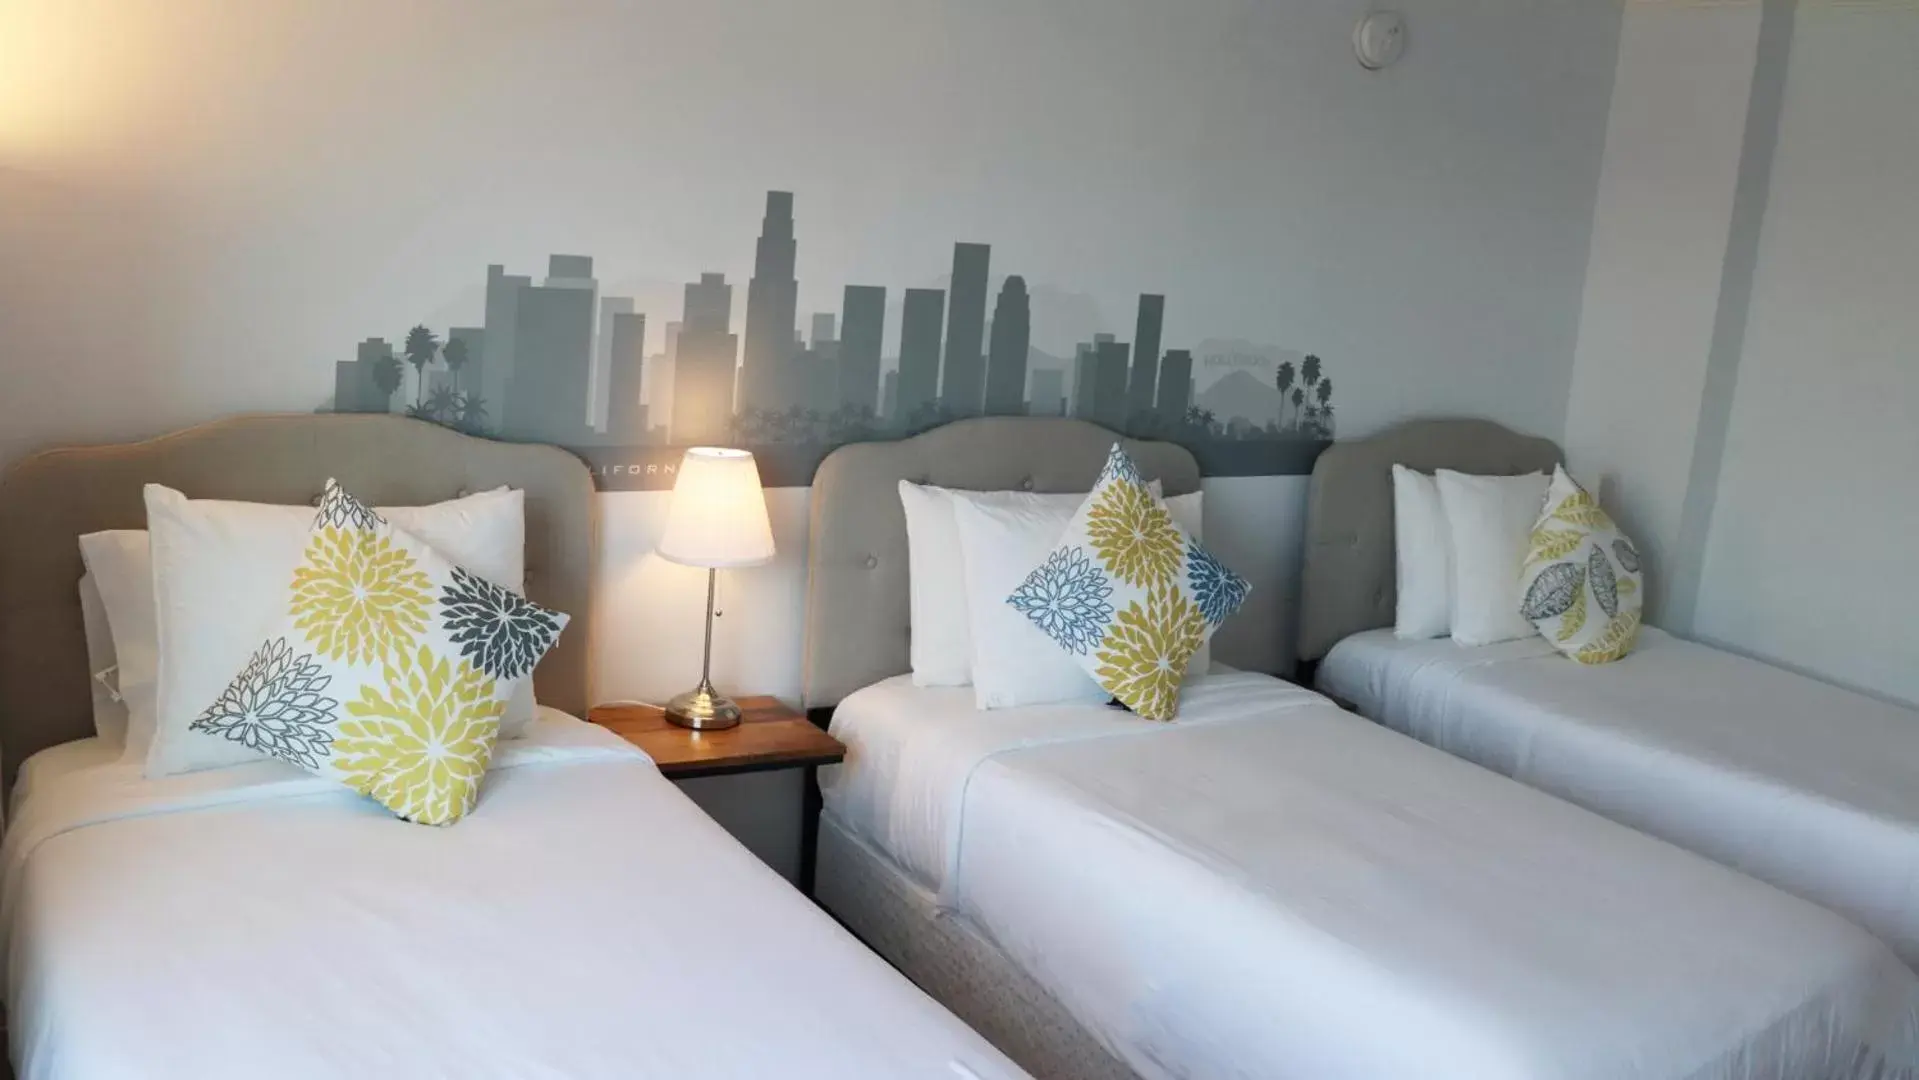 Bedroom, Bed in Hometel Suites Hotel